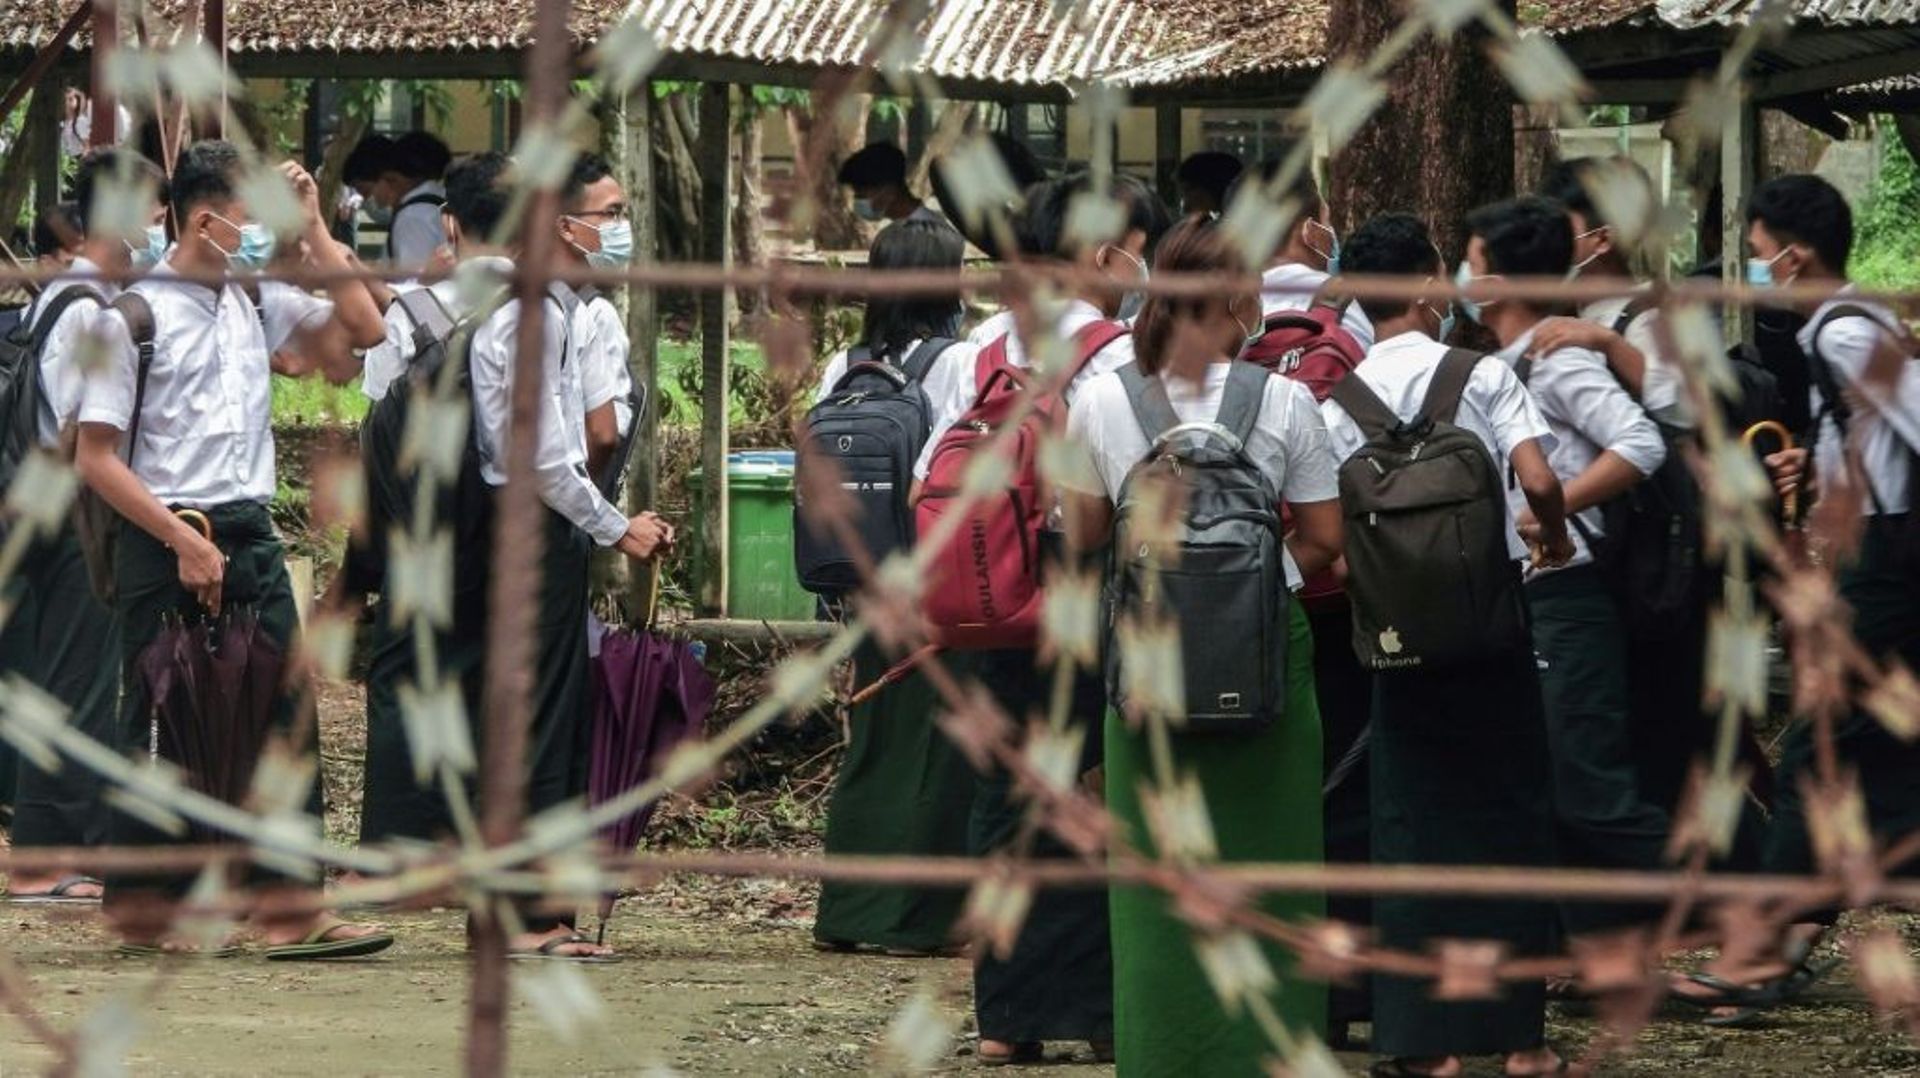 Des élèves devant l'entrée d'une école, le 1er juin 2021 à Sittwe, dans l'Etat de Rakhine, en Birmanie